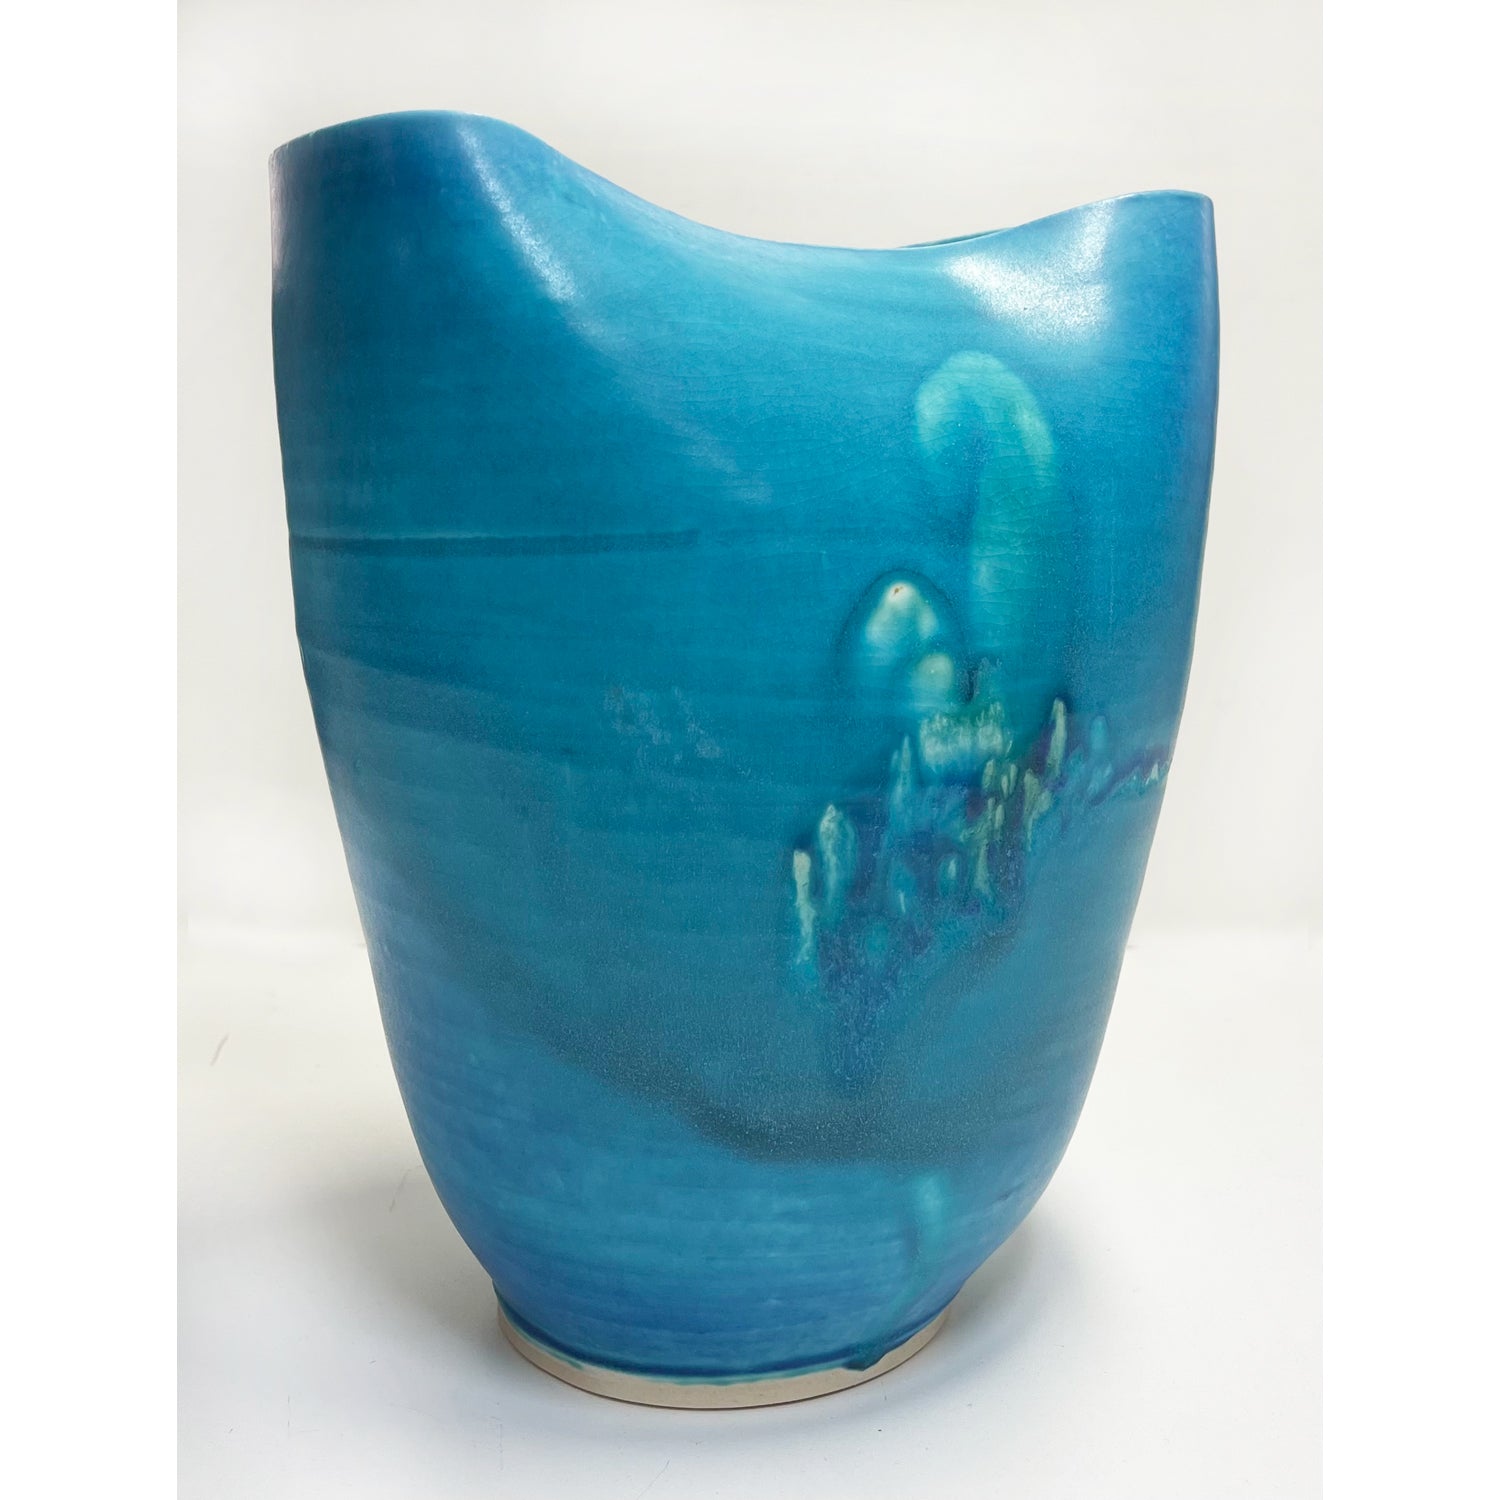 Kayo O'Young - Large Crimp Turquoise Vase, 10" x 8.5" x 5.5"